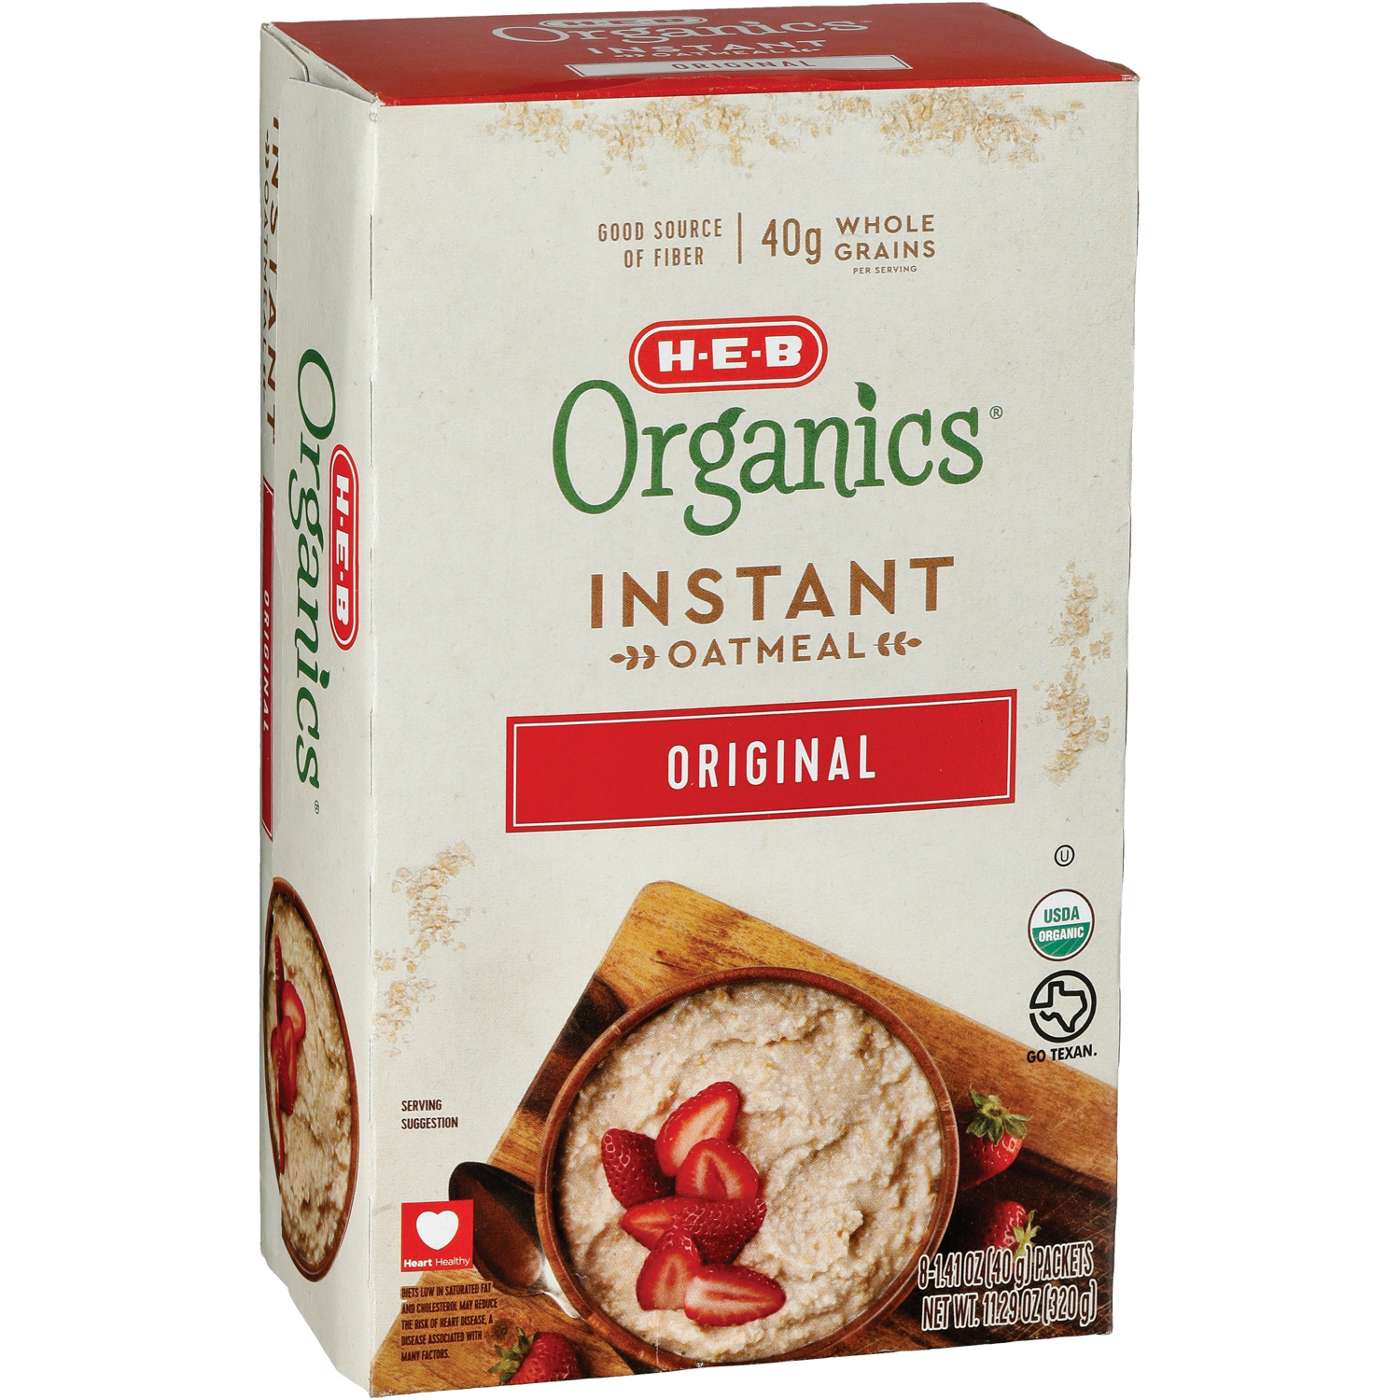 H-E-B Organics Instant Oatmeal - Original; image 2 of 2